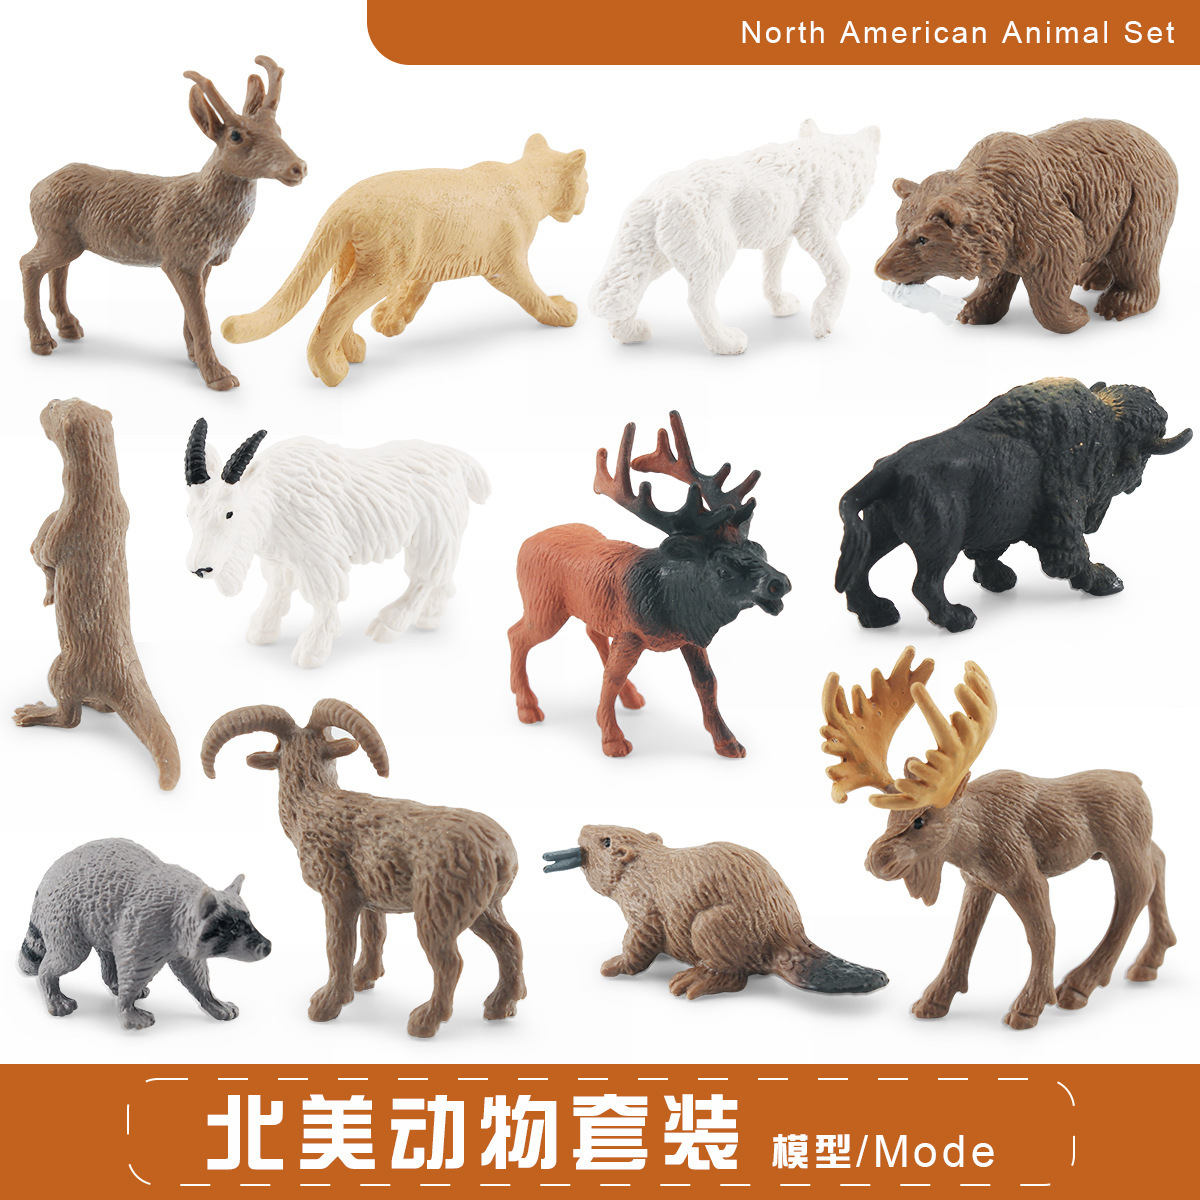 仿真北美野生动物模型美洲狮浣熊灰熊麋鹿水獭海狸叉角羚玩具摆件